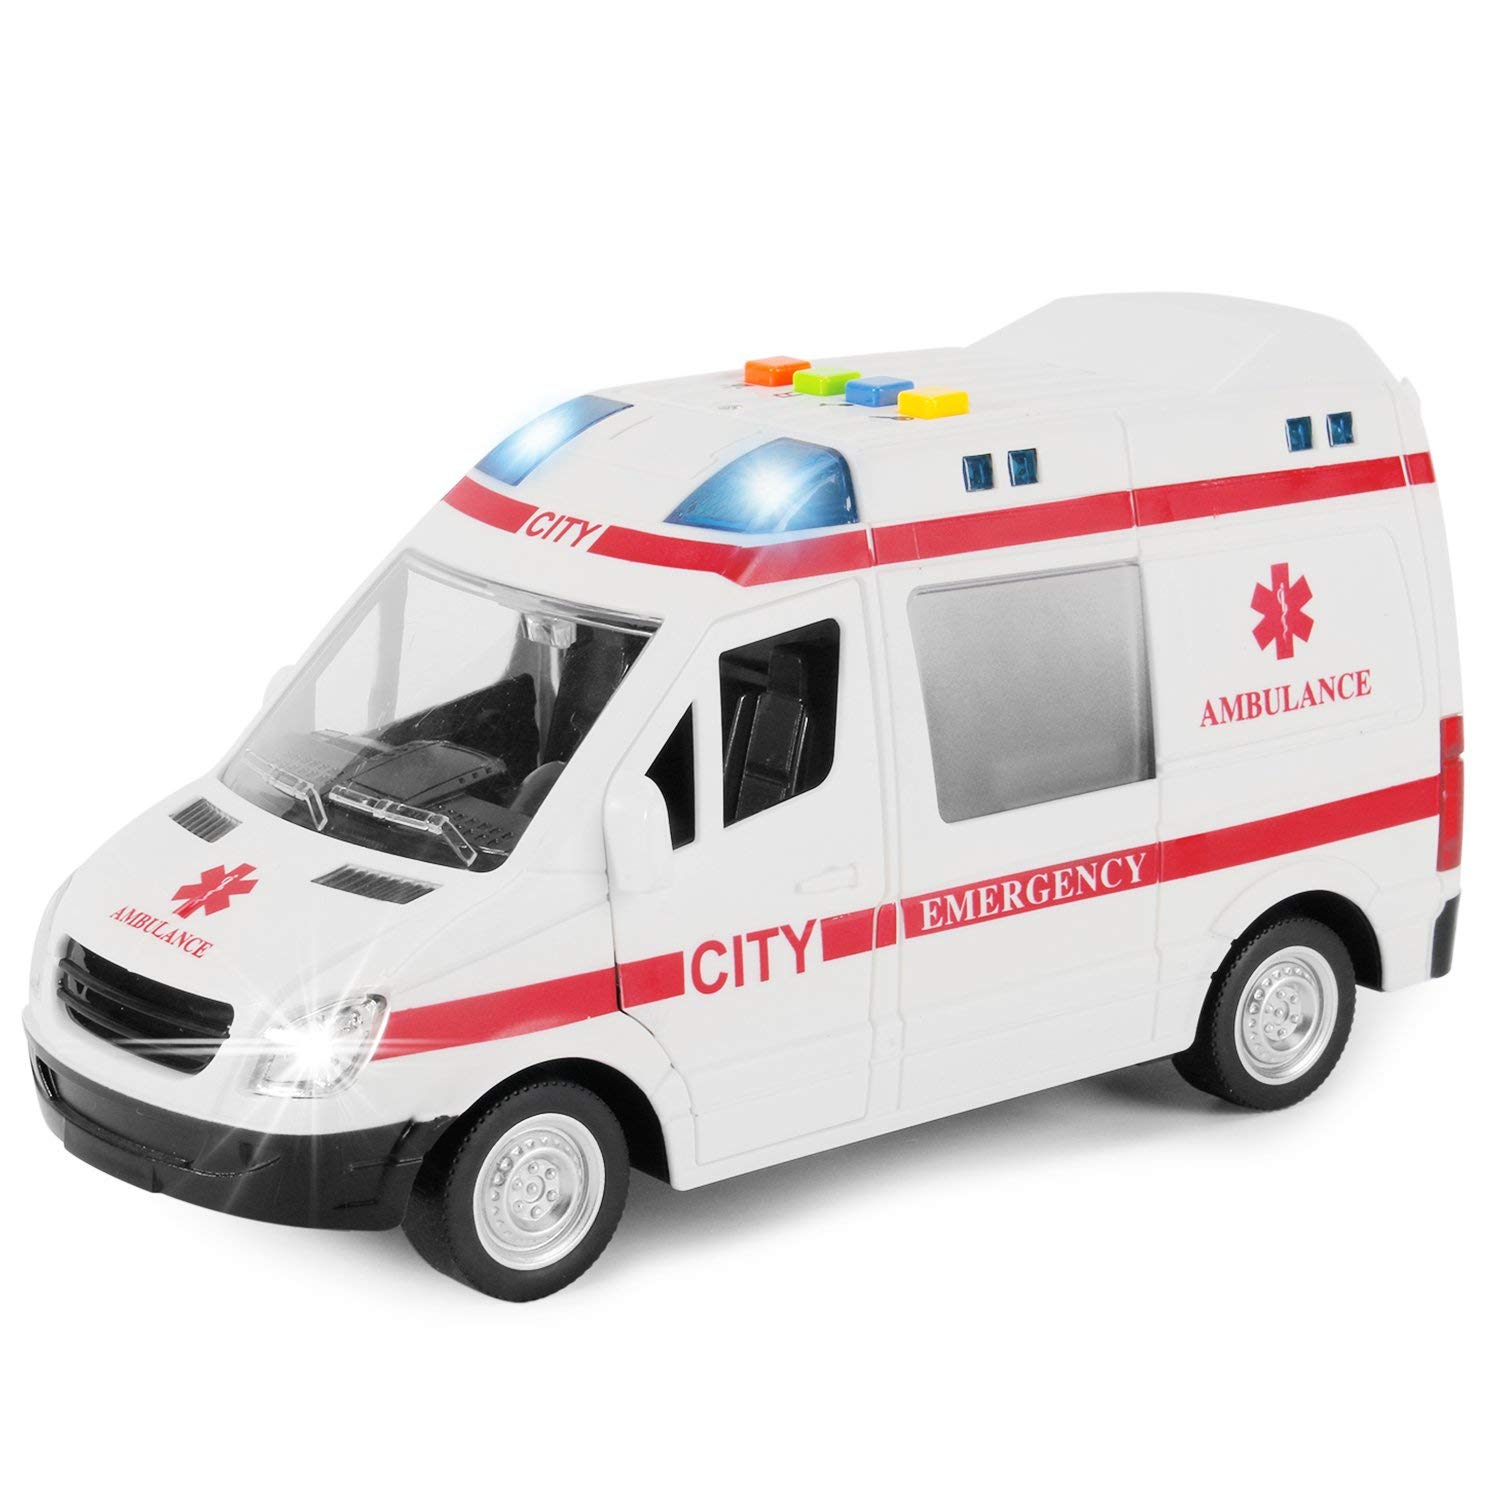 Ambulance Emergency kit